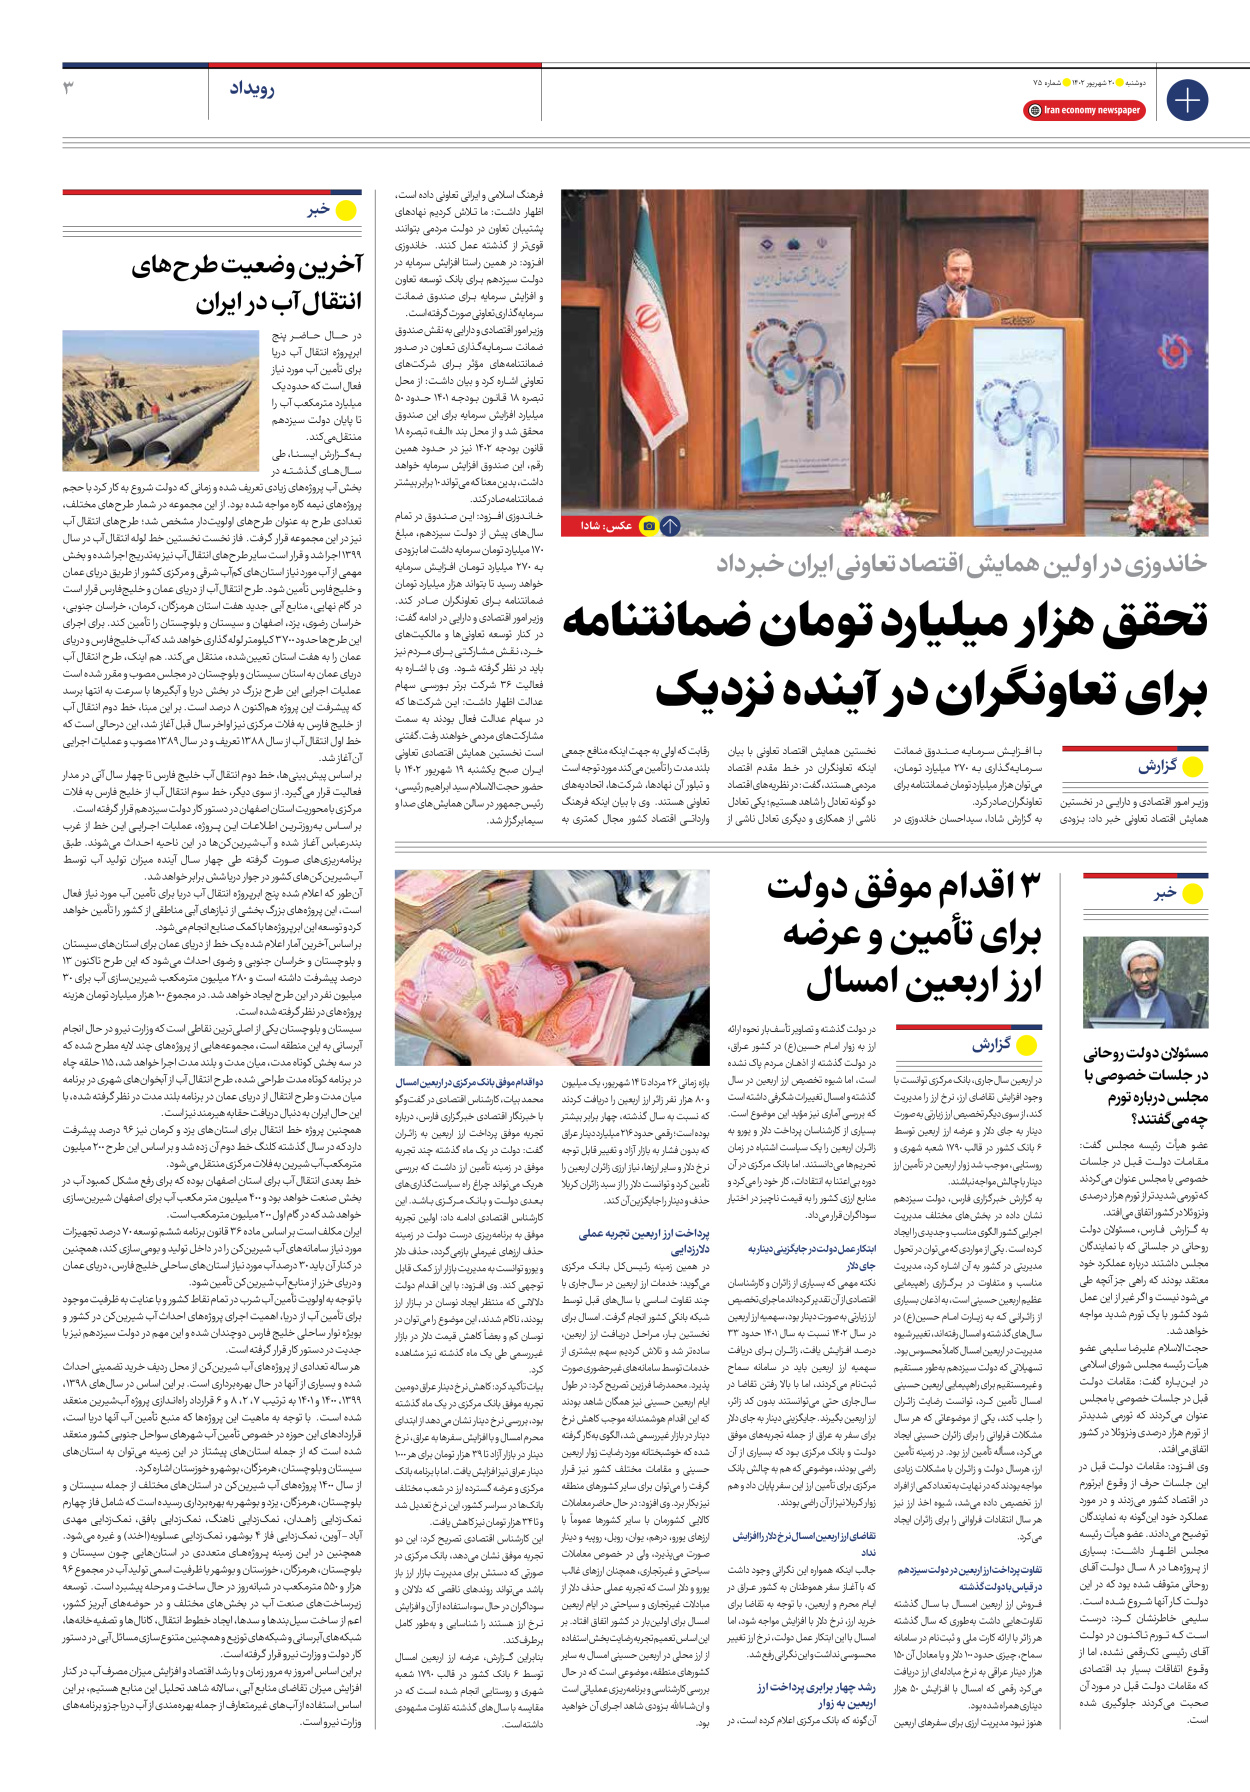 روزنامه ایران اقتصادی - شماره هفتاد و پنج - ۲۰ شهریور ۱۴۰۲ - صفحه ۳